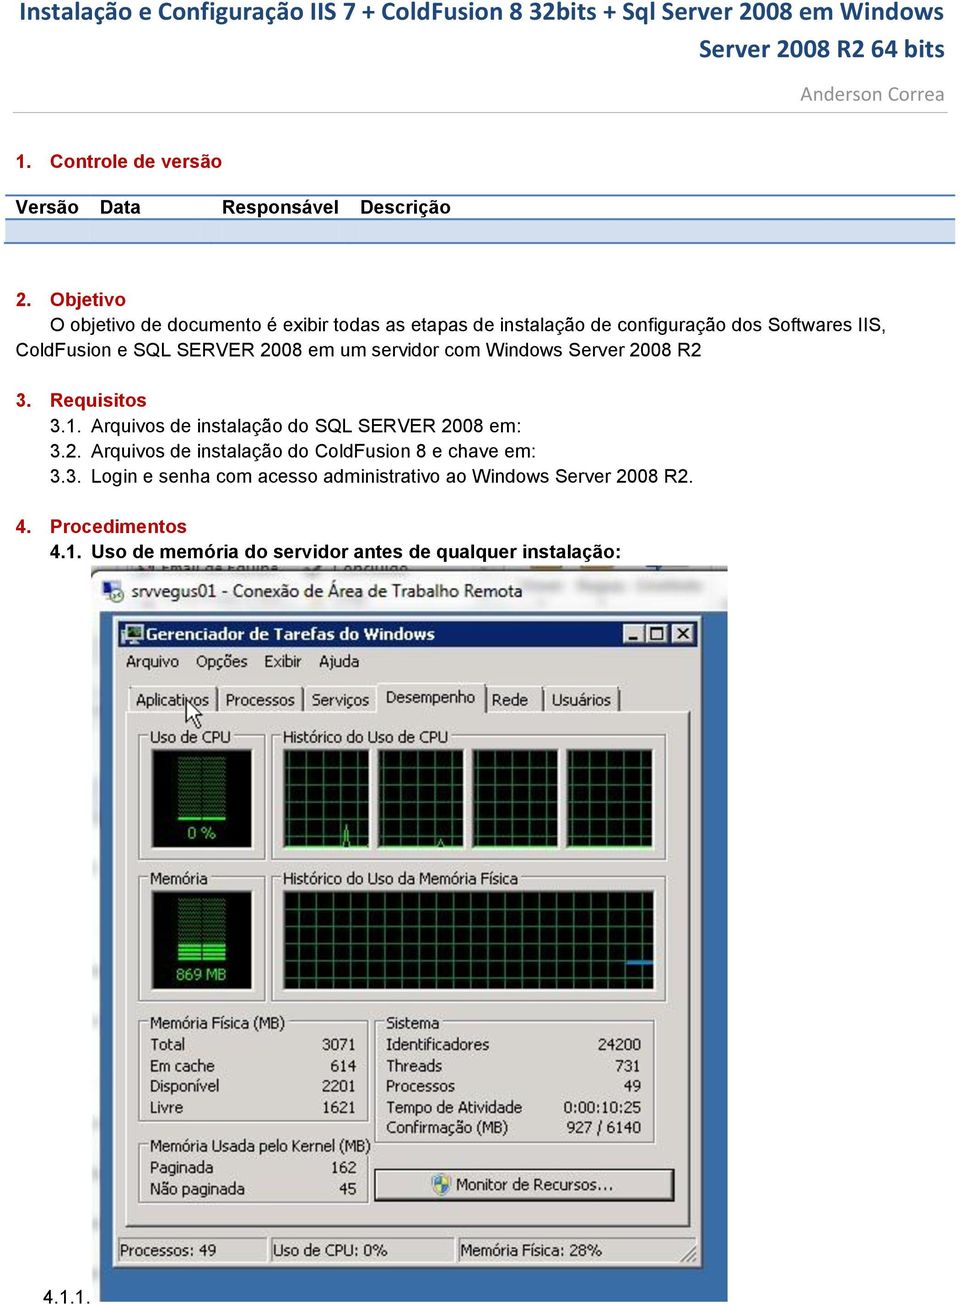 SERVER 2008 em um servidor com Windows Server 2008 R2 3. Requisitos 3.1. Arquivos de instalação do SQL SERVER 2008 em: 3.2. Arquivos de instalação do ColdFusion 8 e chave em: 3.